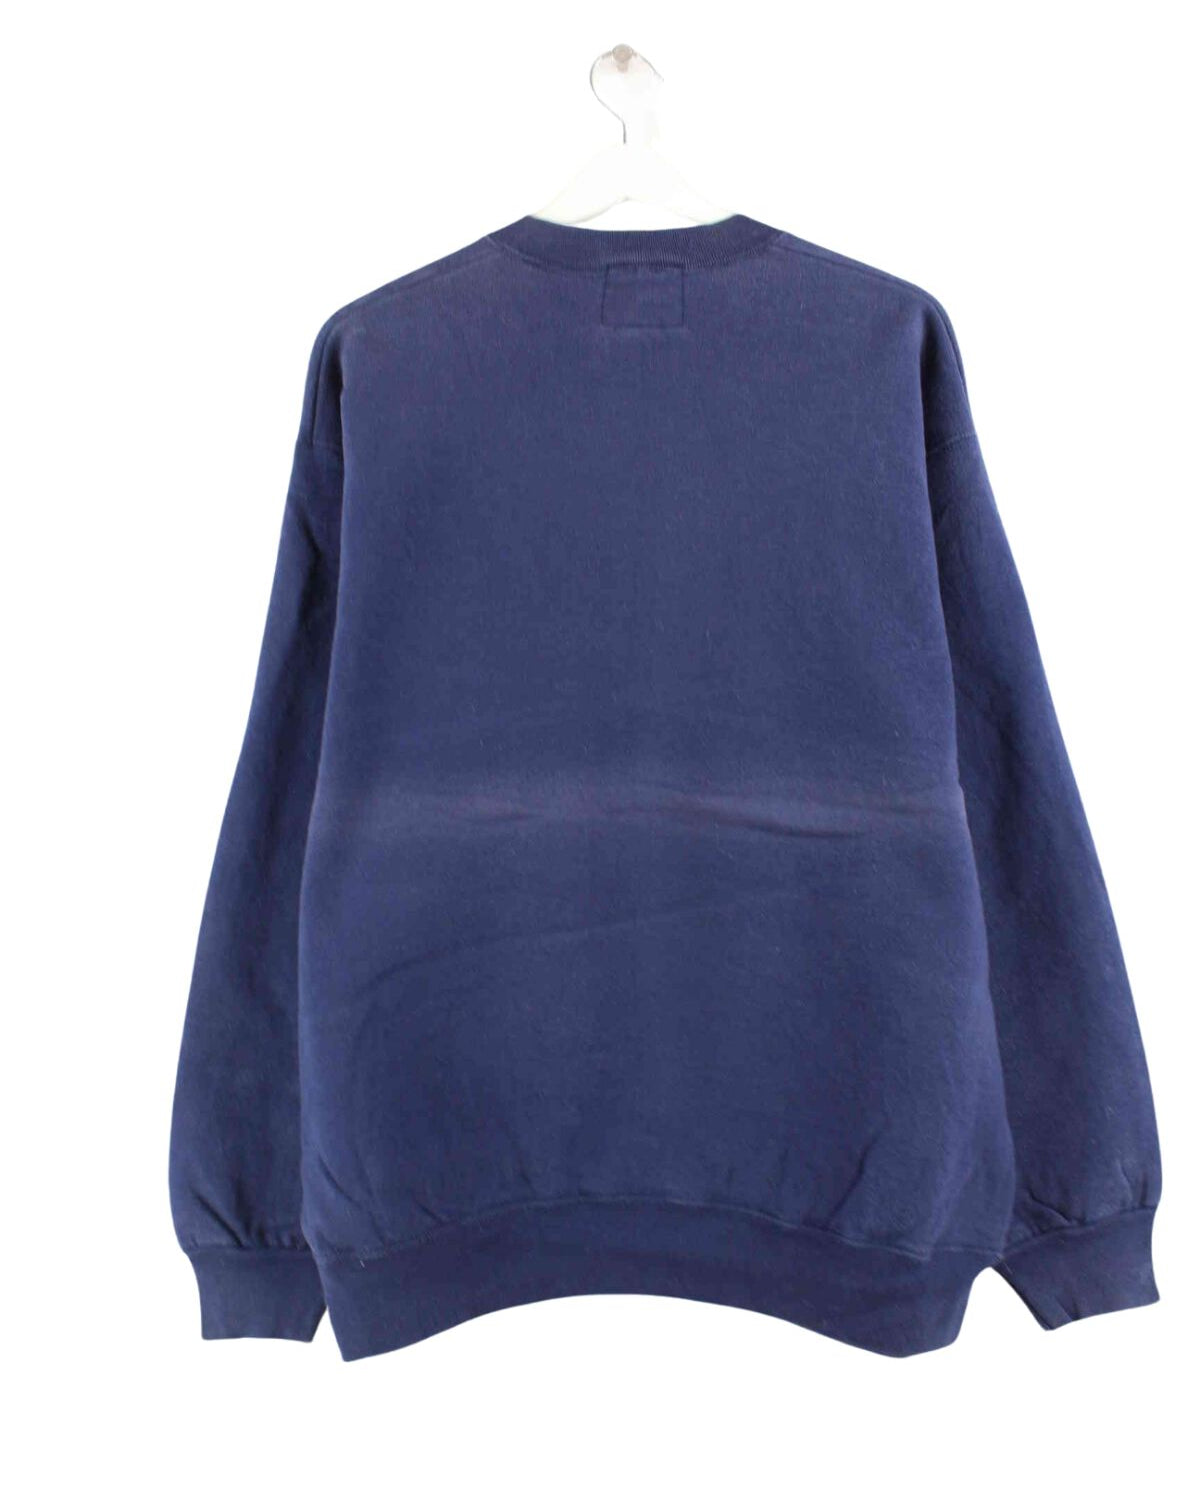 Camp David 80s Vintage Embroidered Sweater Blau L (back image)